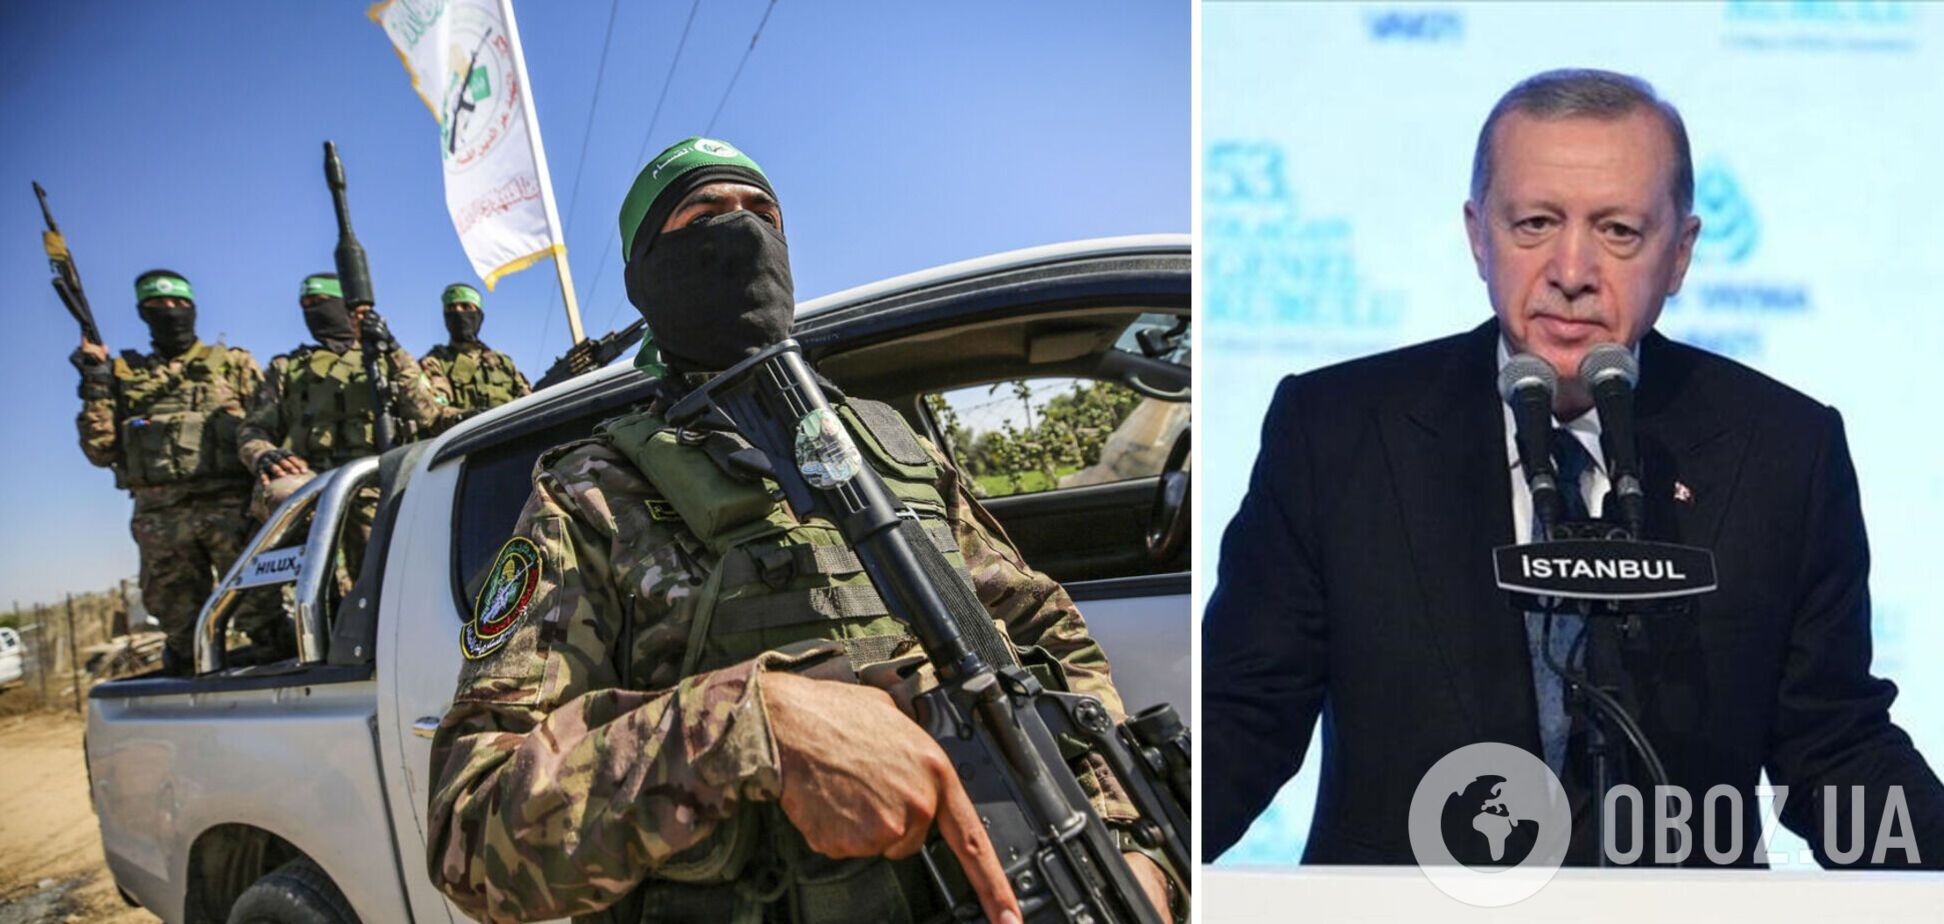 Эрдоган заявил о полной поддержке ХАМАС и сравнил Нетаньяху с Гитлером и Сталиным